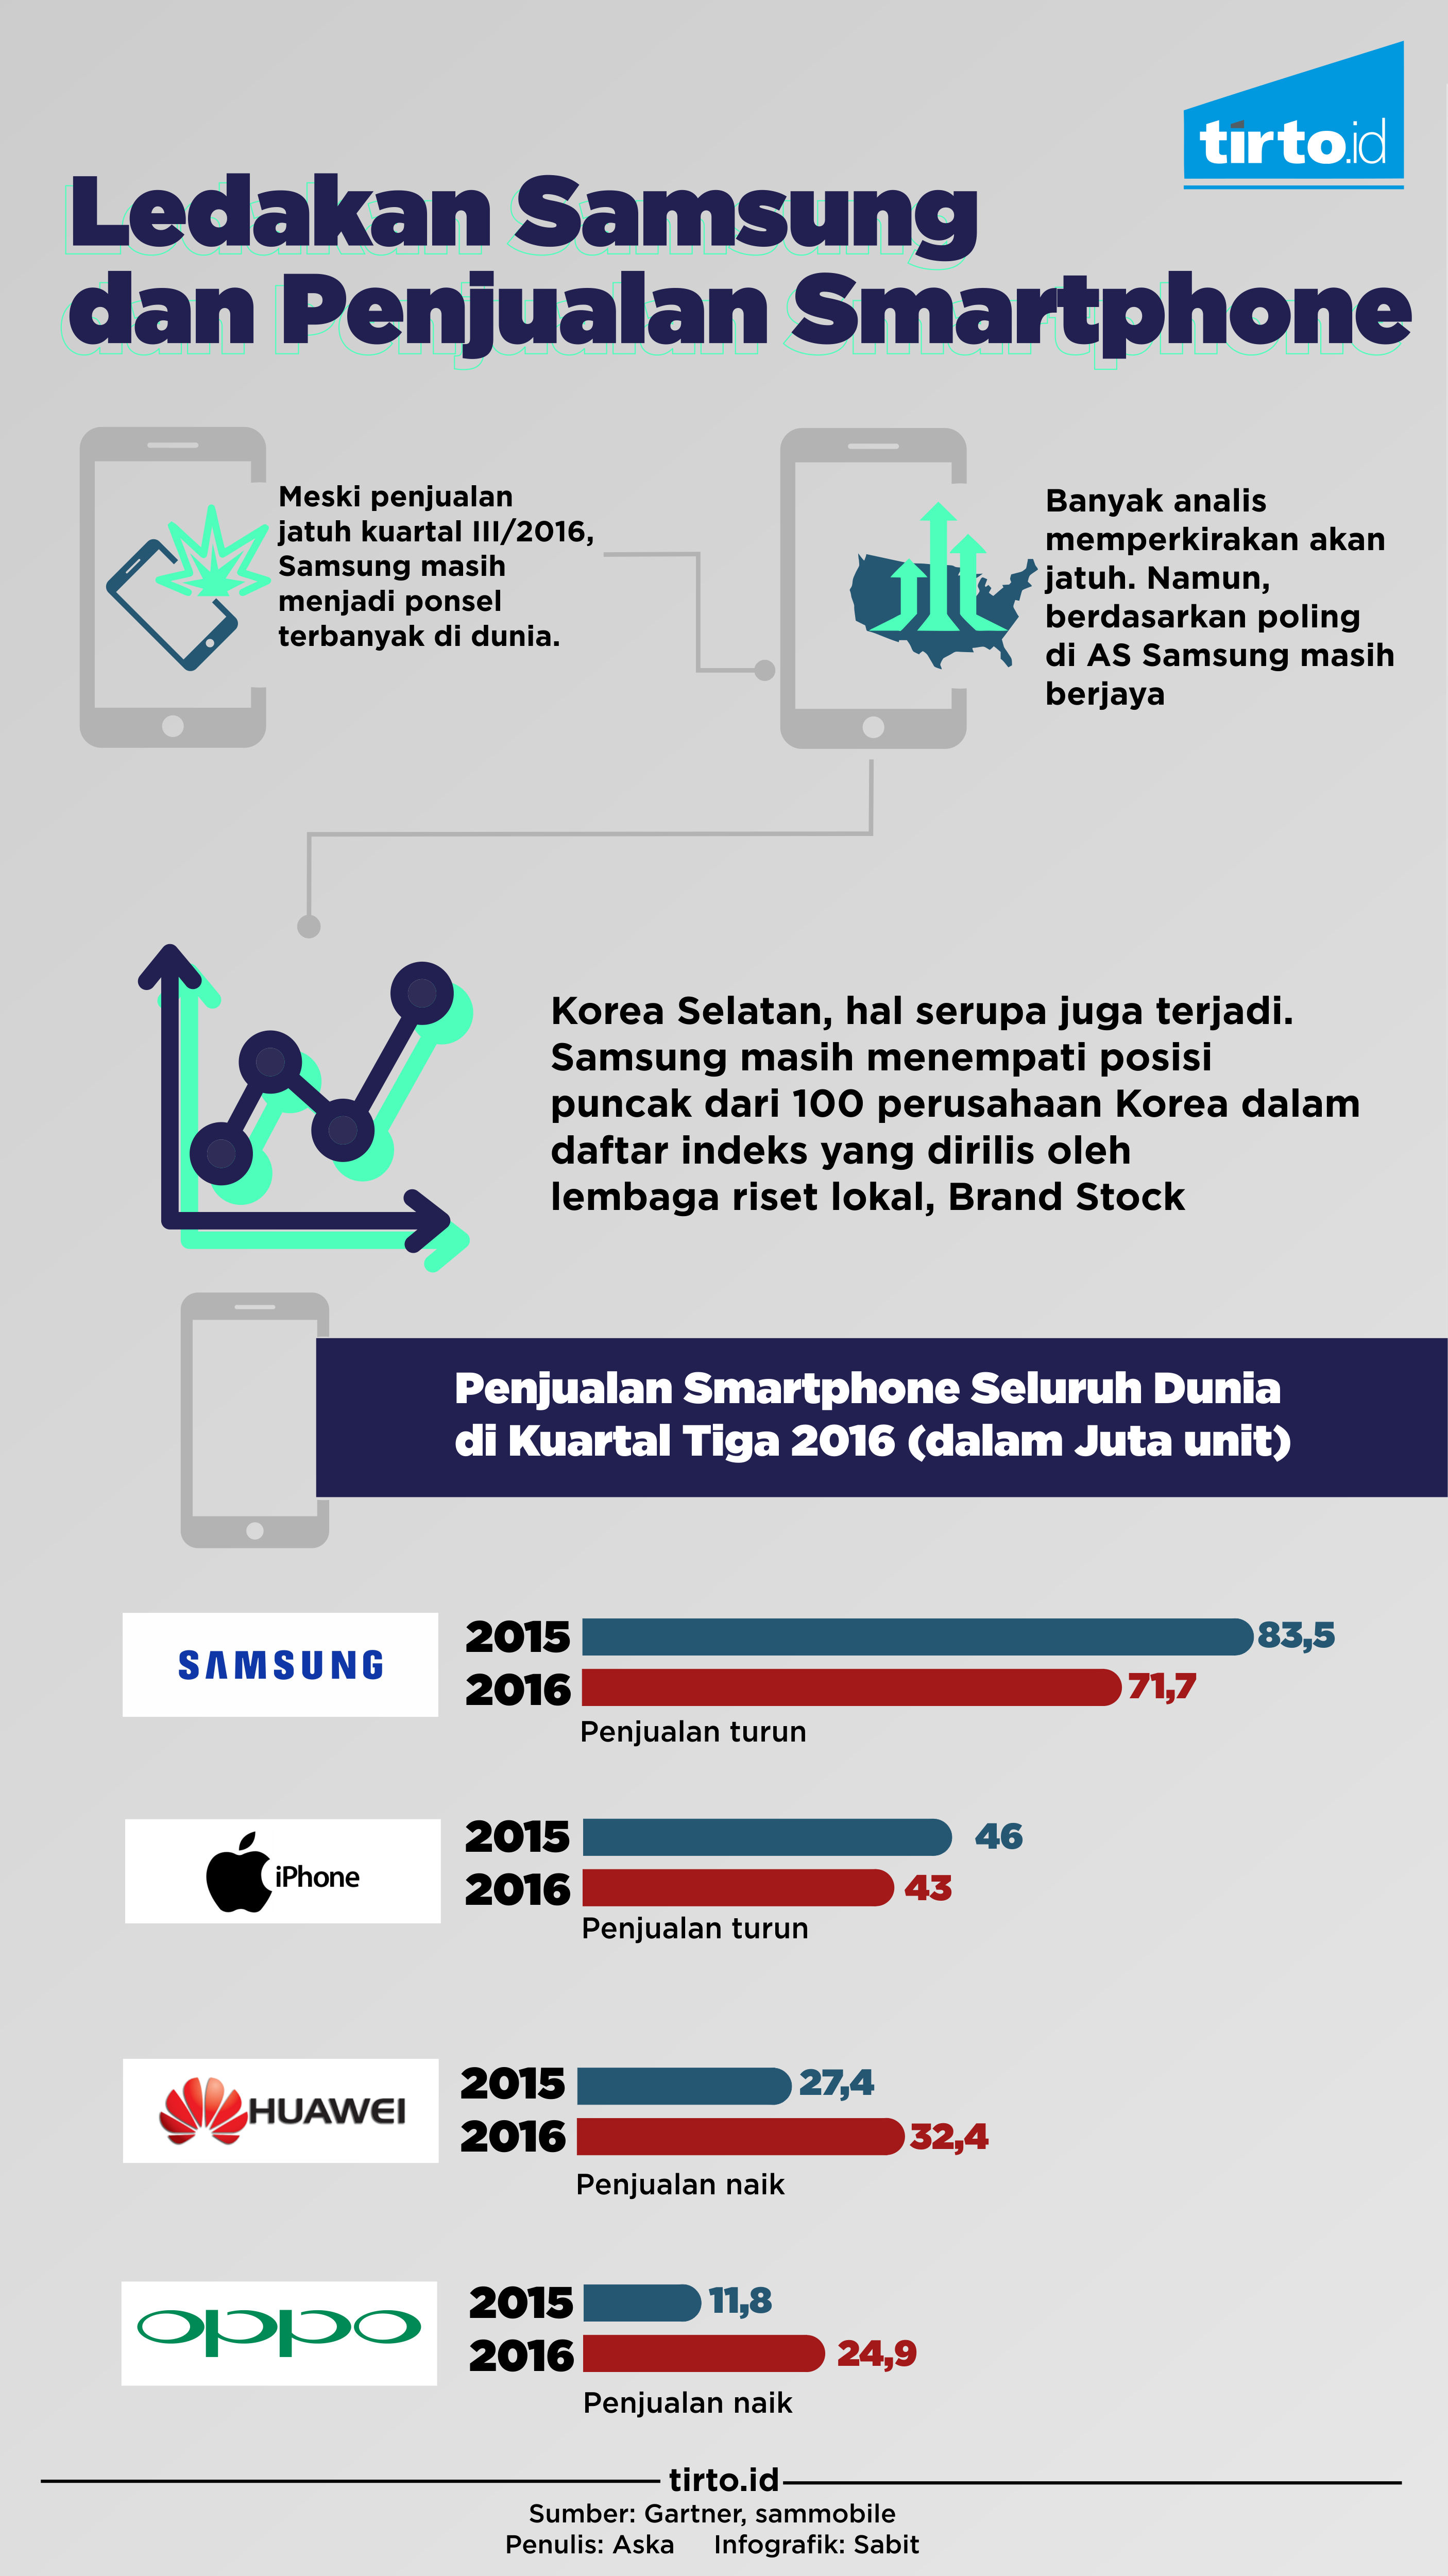 Infografik Ledakan Samsung dan Penjualan Smartphone